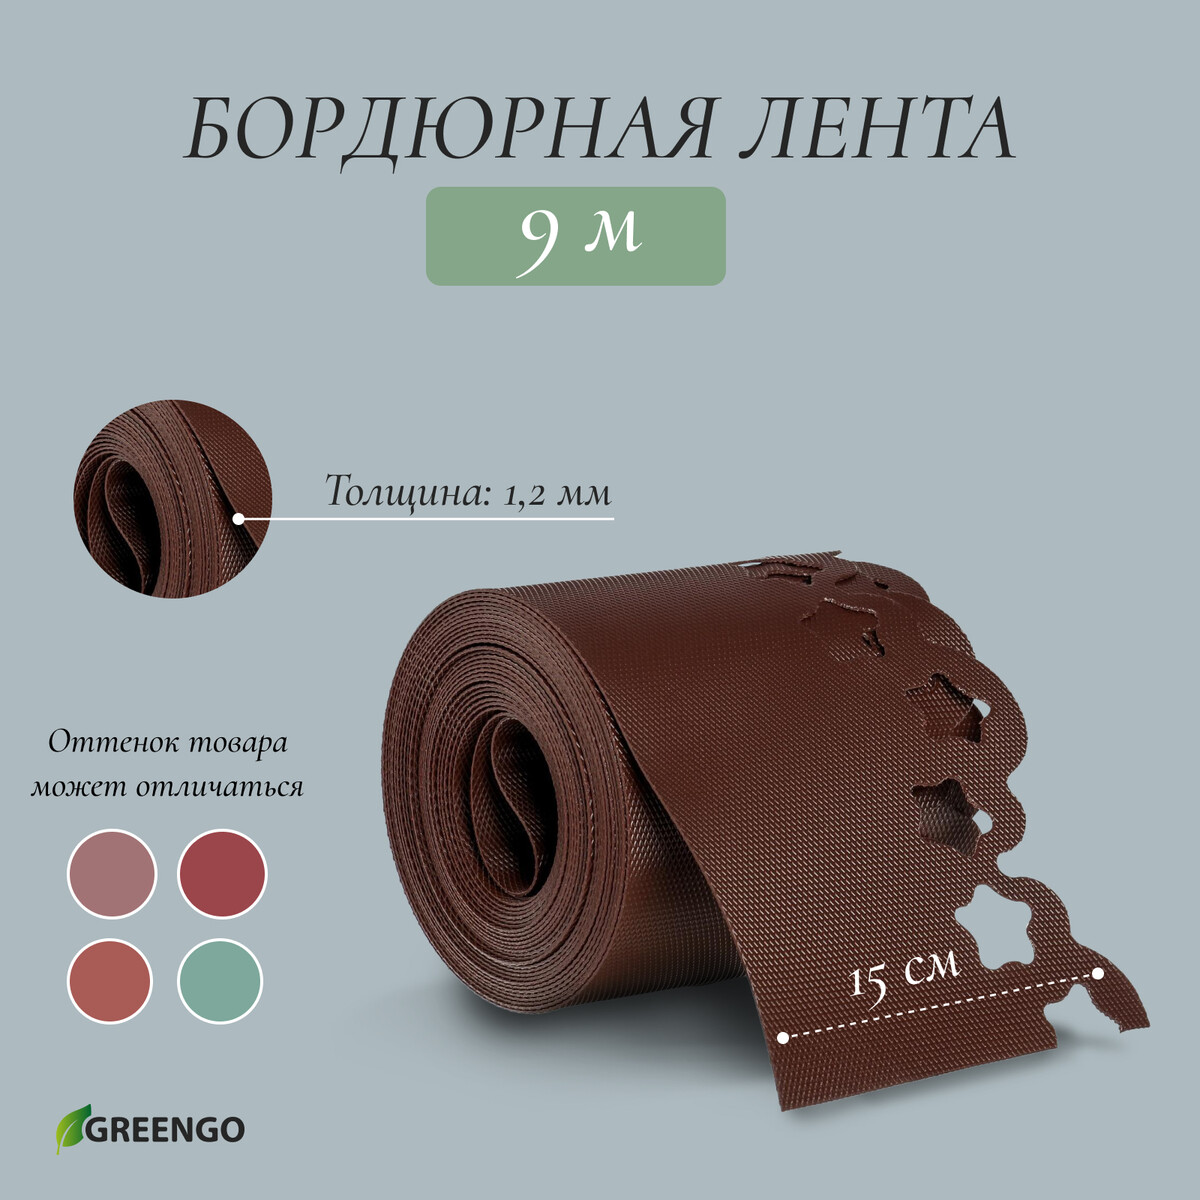 Лента бордюрная, 0.15 × 9 м, толщина 1.2 мм, пластиковая, фигурная, коричневая, greengo Greengo